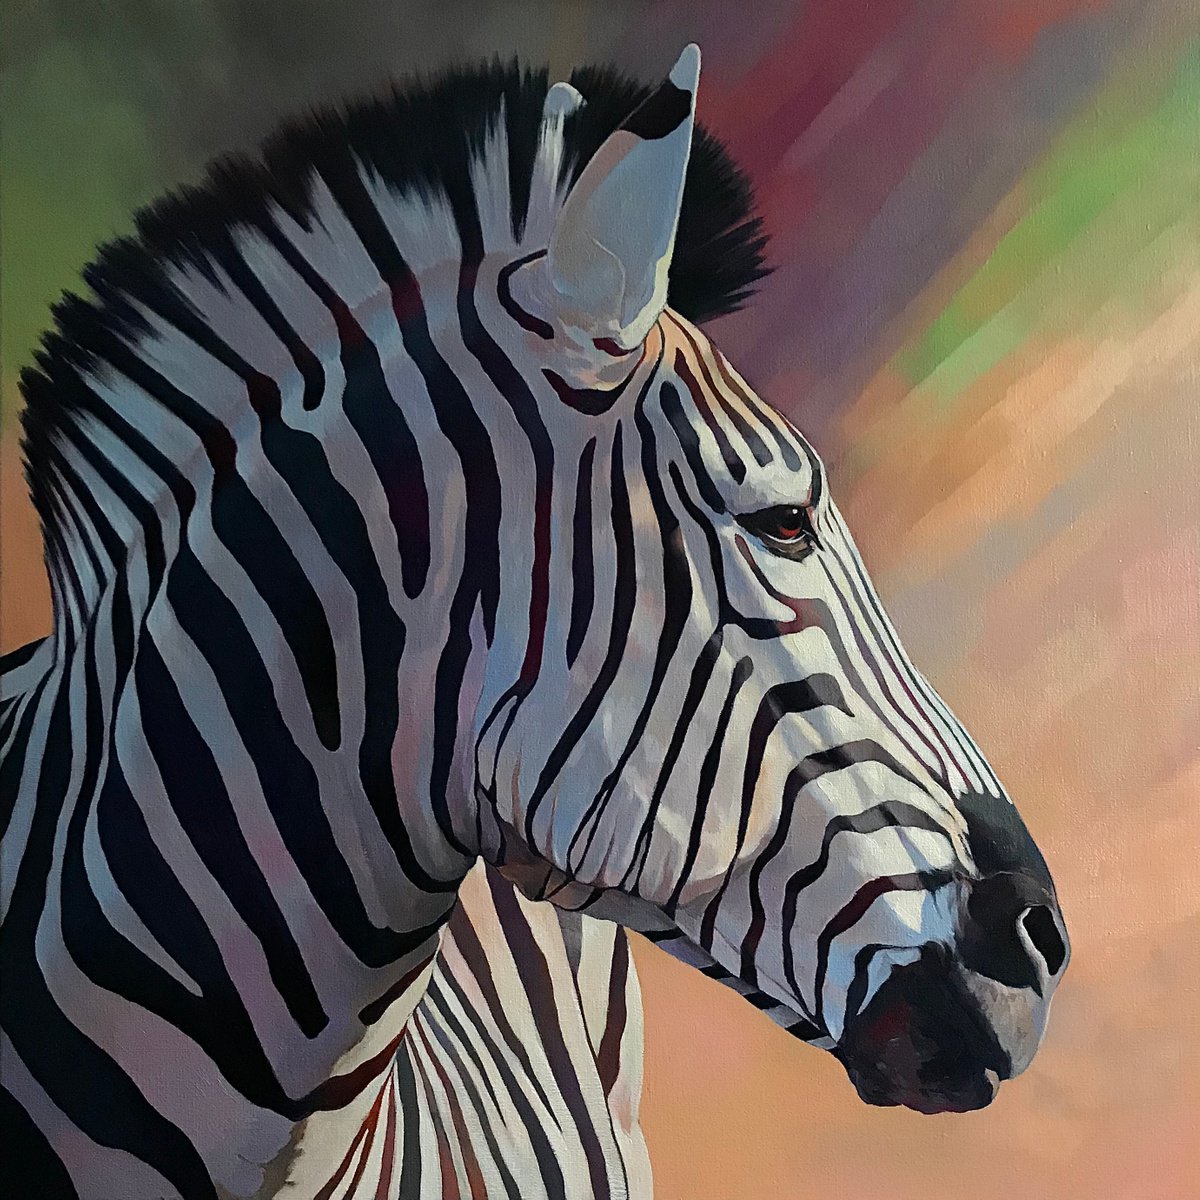 Dreamy zebra by Andrii Roshkaniuk